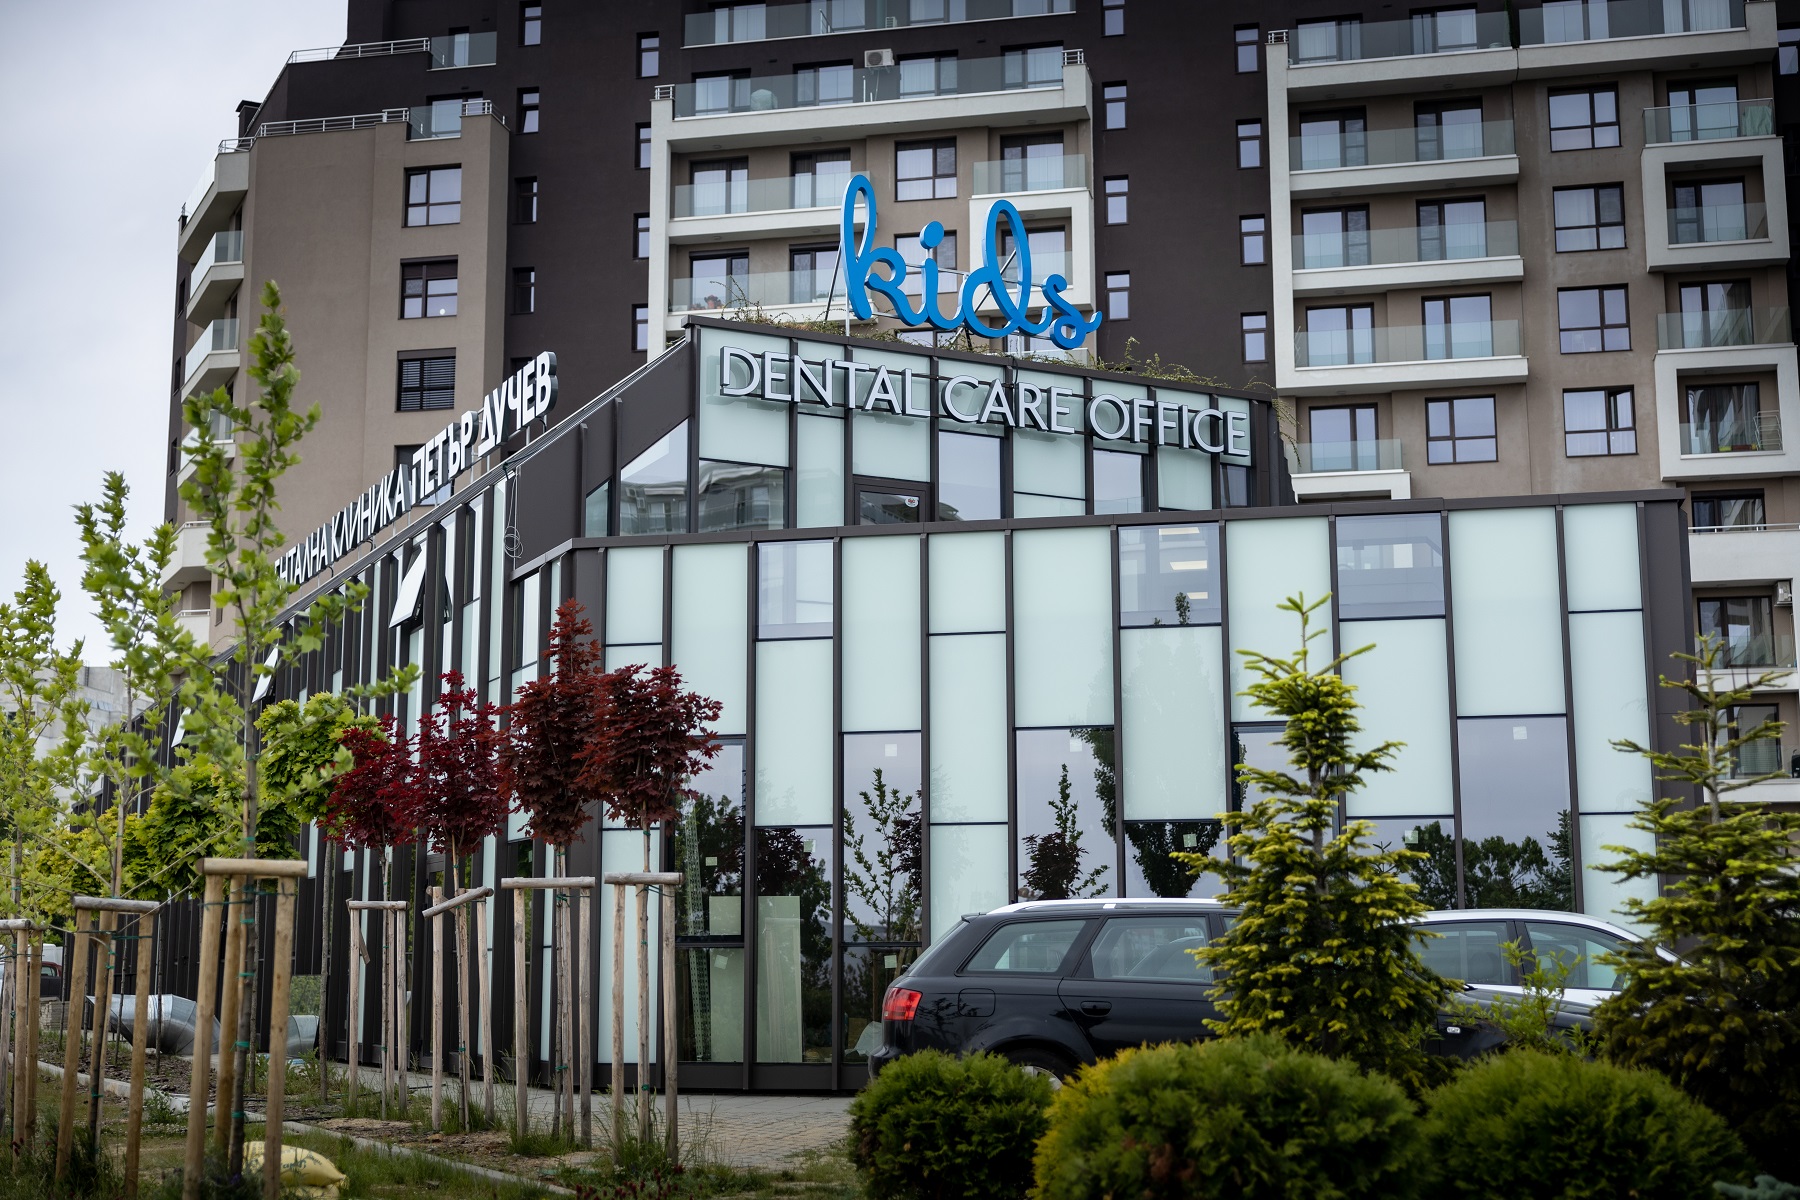 Дентална клиника от ново поколение отвори врати в София Dental Clinic Petar Duchev Kids & Dental Care Office посреща първите си пациенти